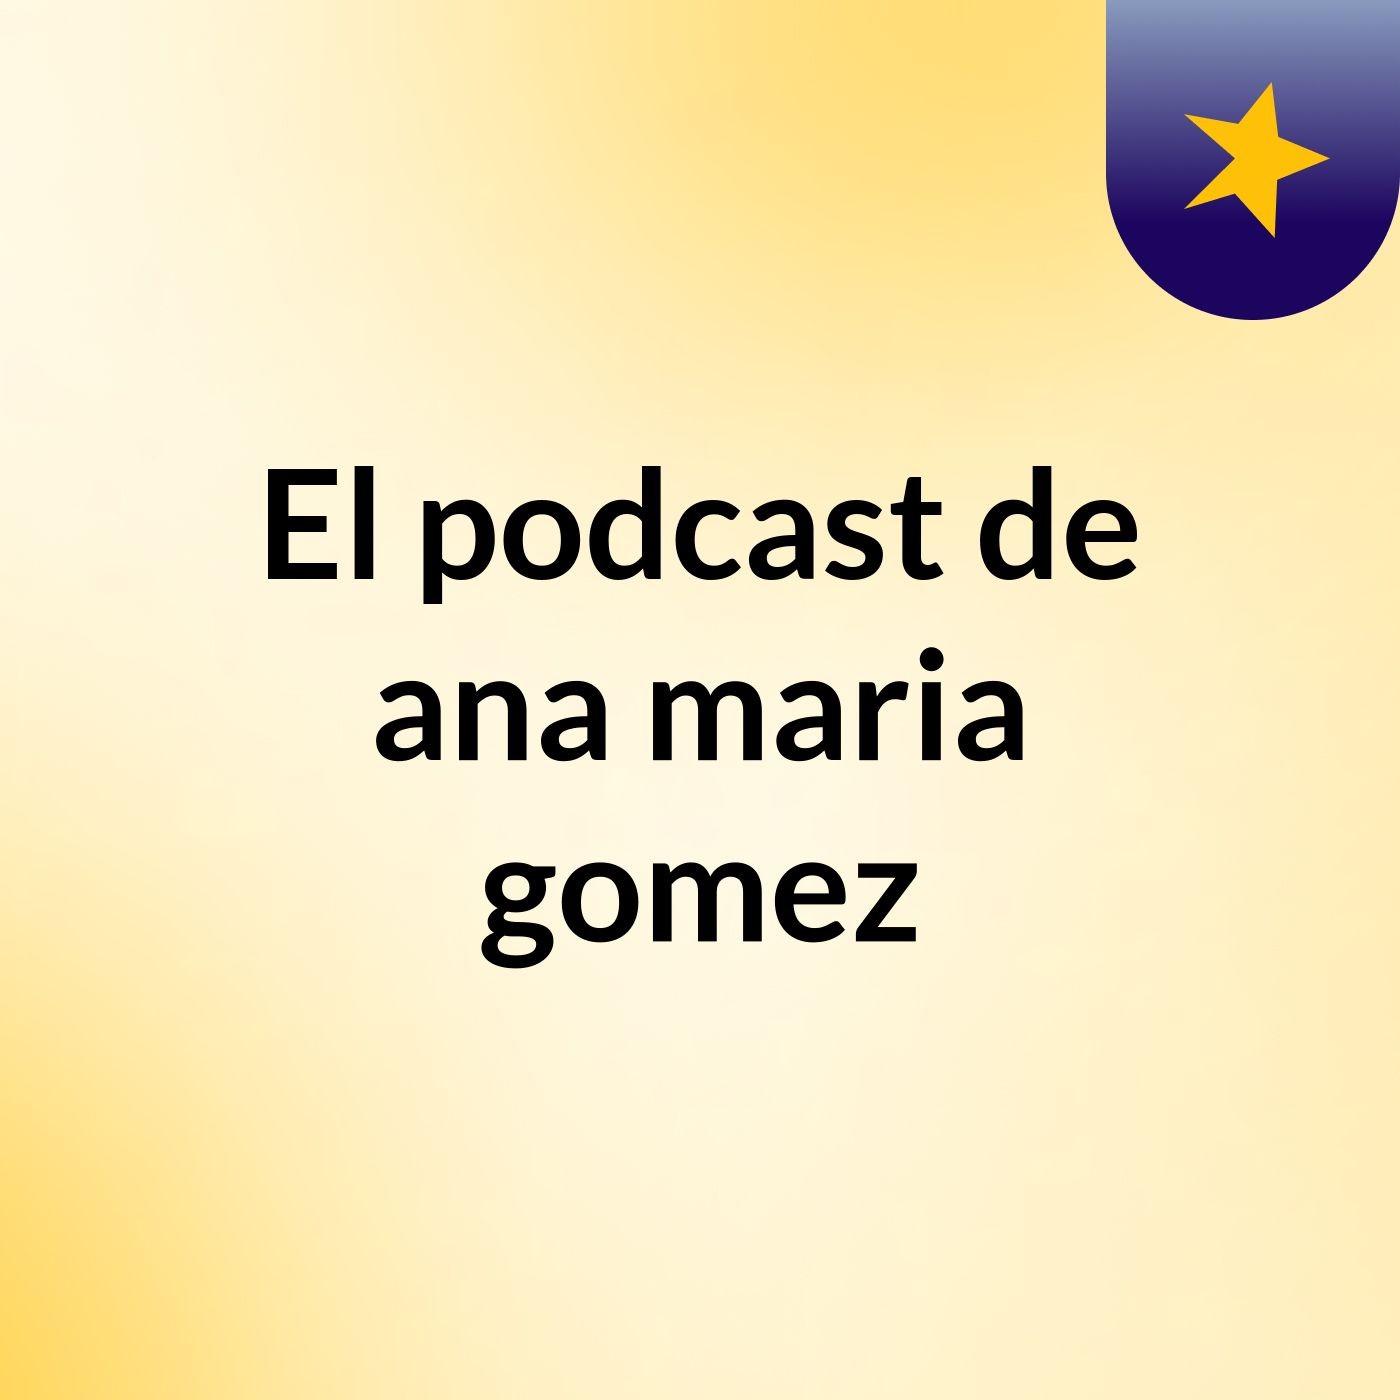 El podcast de ana maria gomez